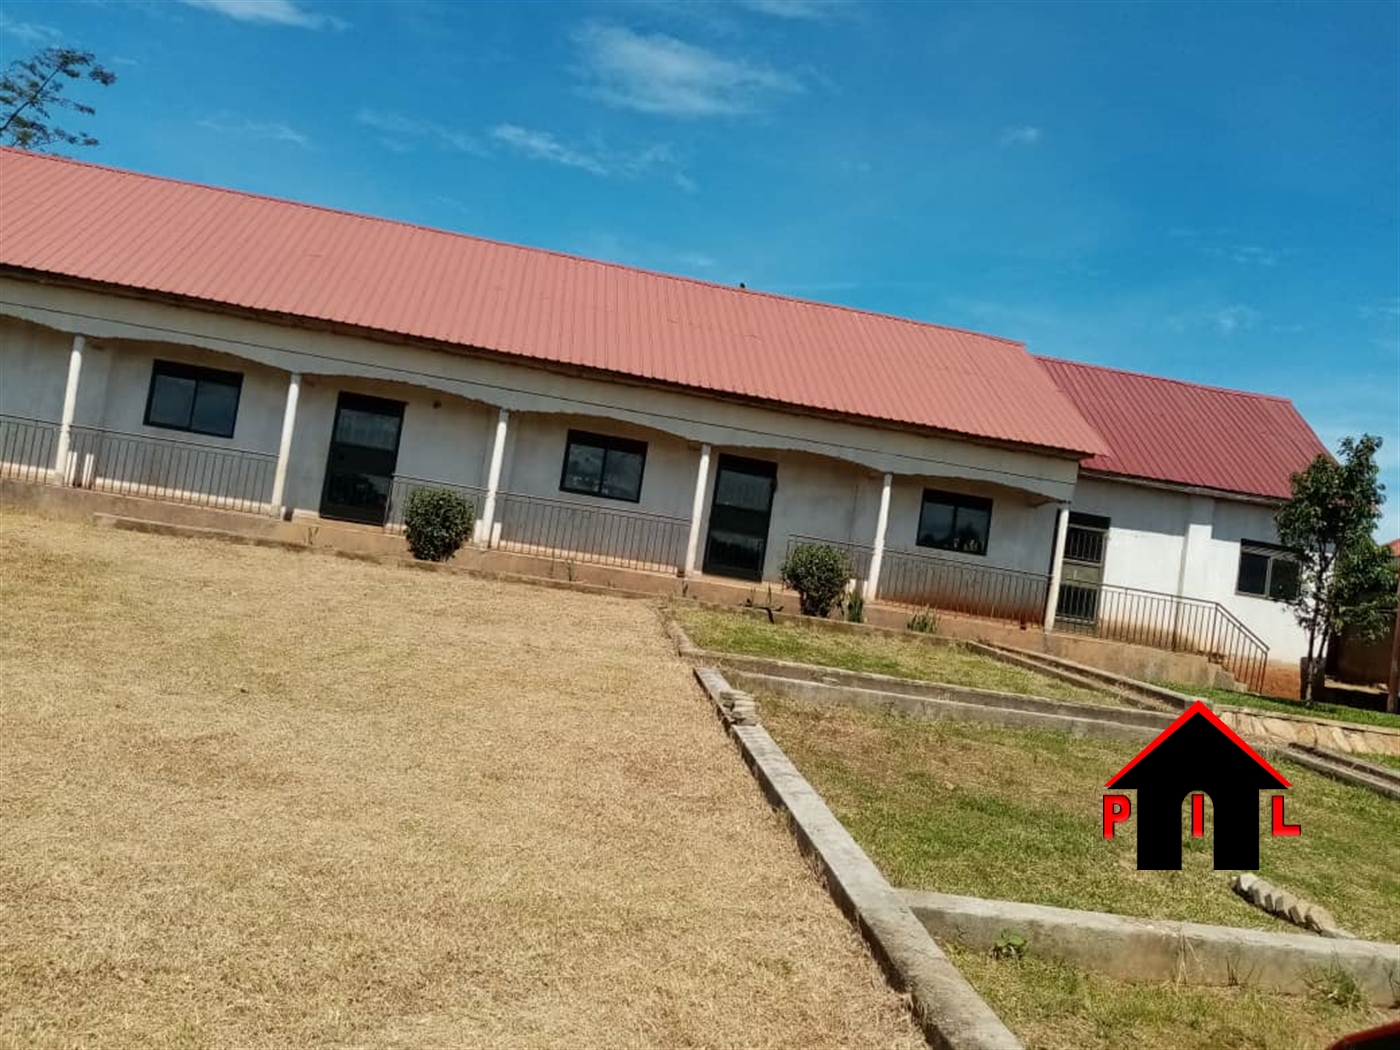 School for sale in Mukono1 Mukono